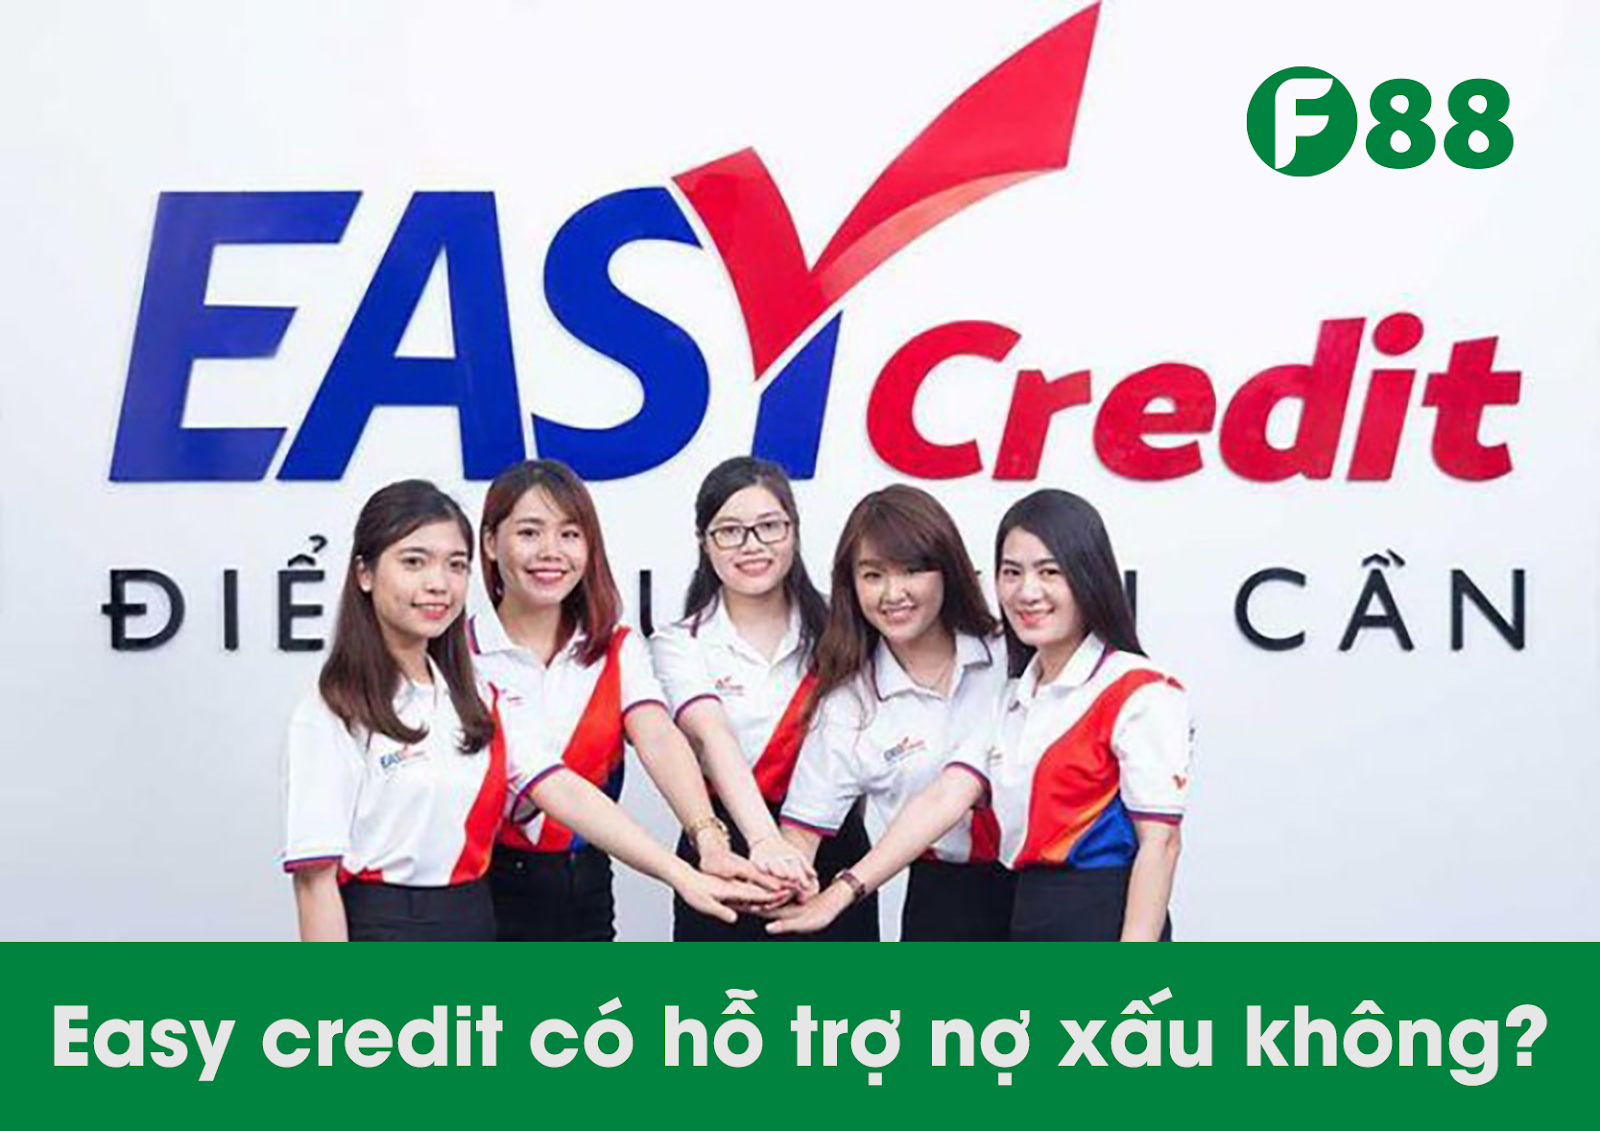 Easy credit có hỗ trợ nợ xấu không?